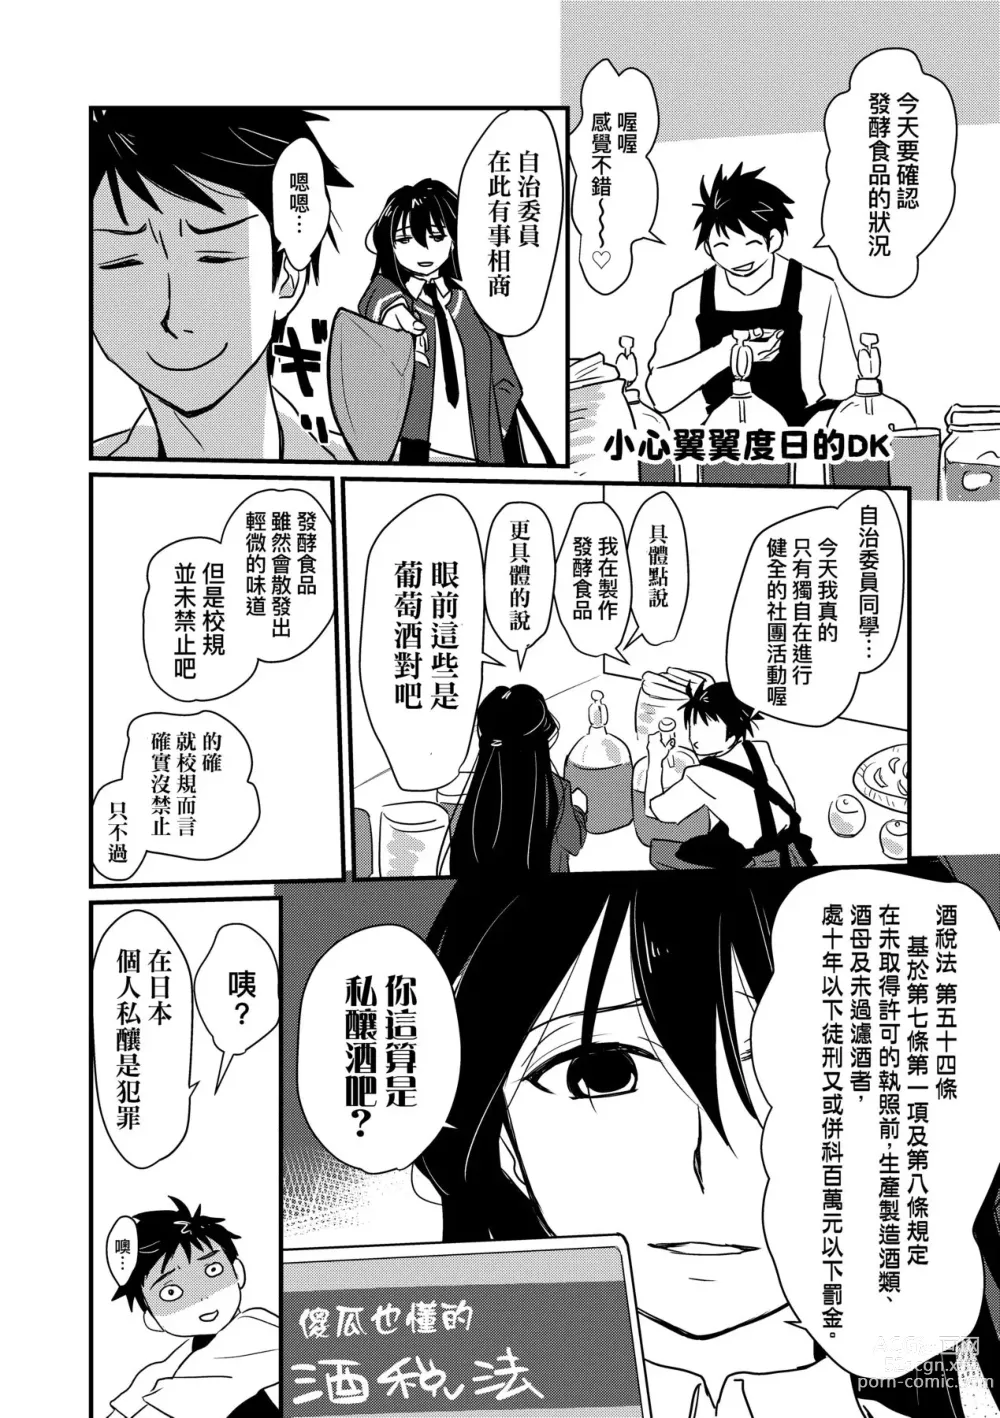 Page 213 of manga Echiechi JK Houimou (decensored)